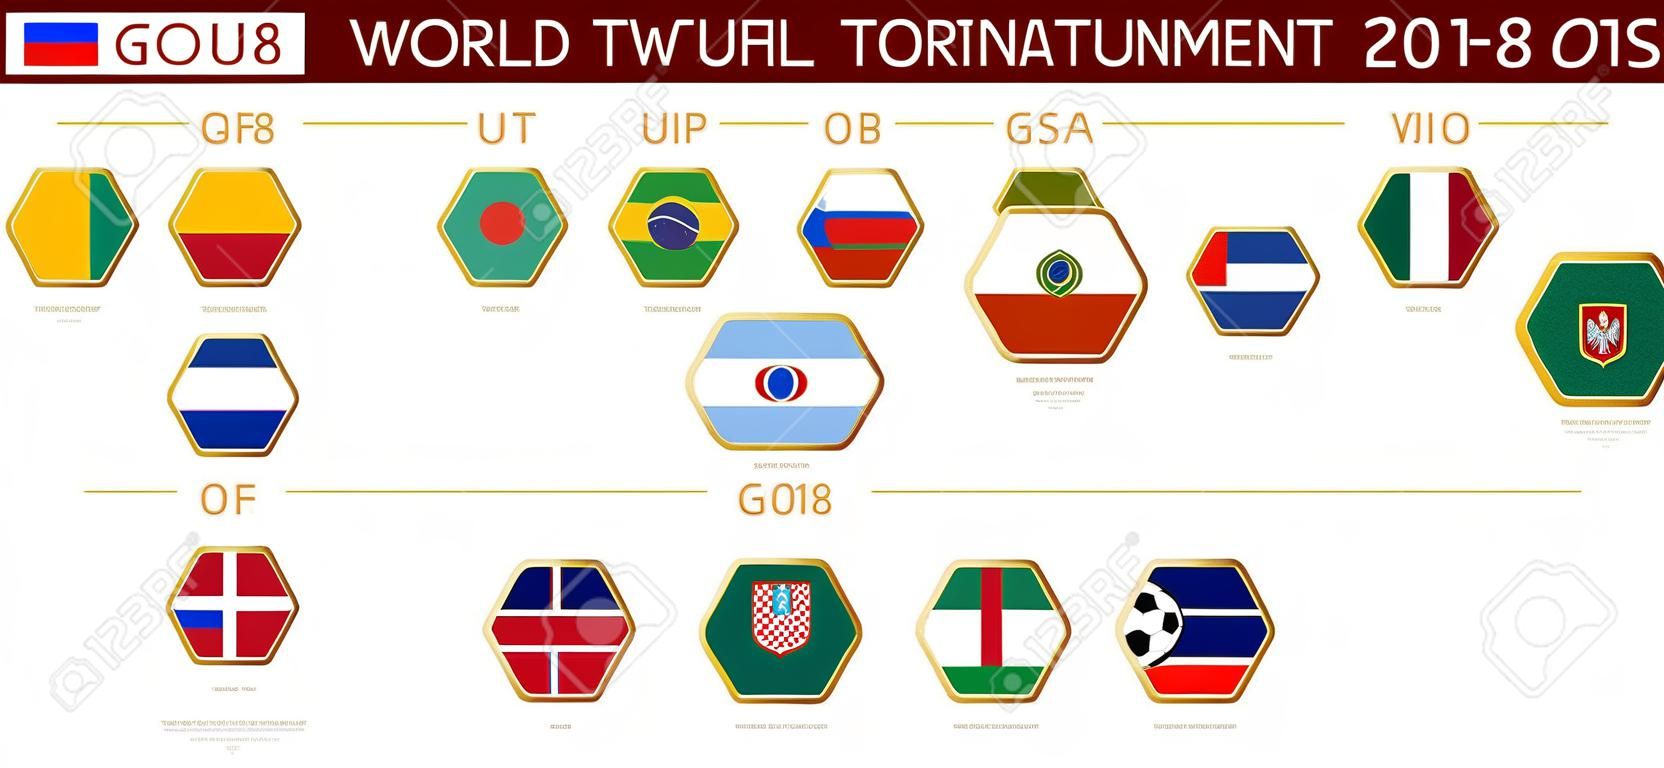 Światowy turniej piłki nożnej 2018 w Rosji, flagi wszystkich uczestników według grup